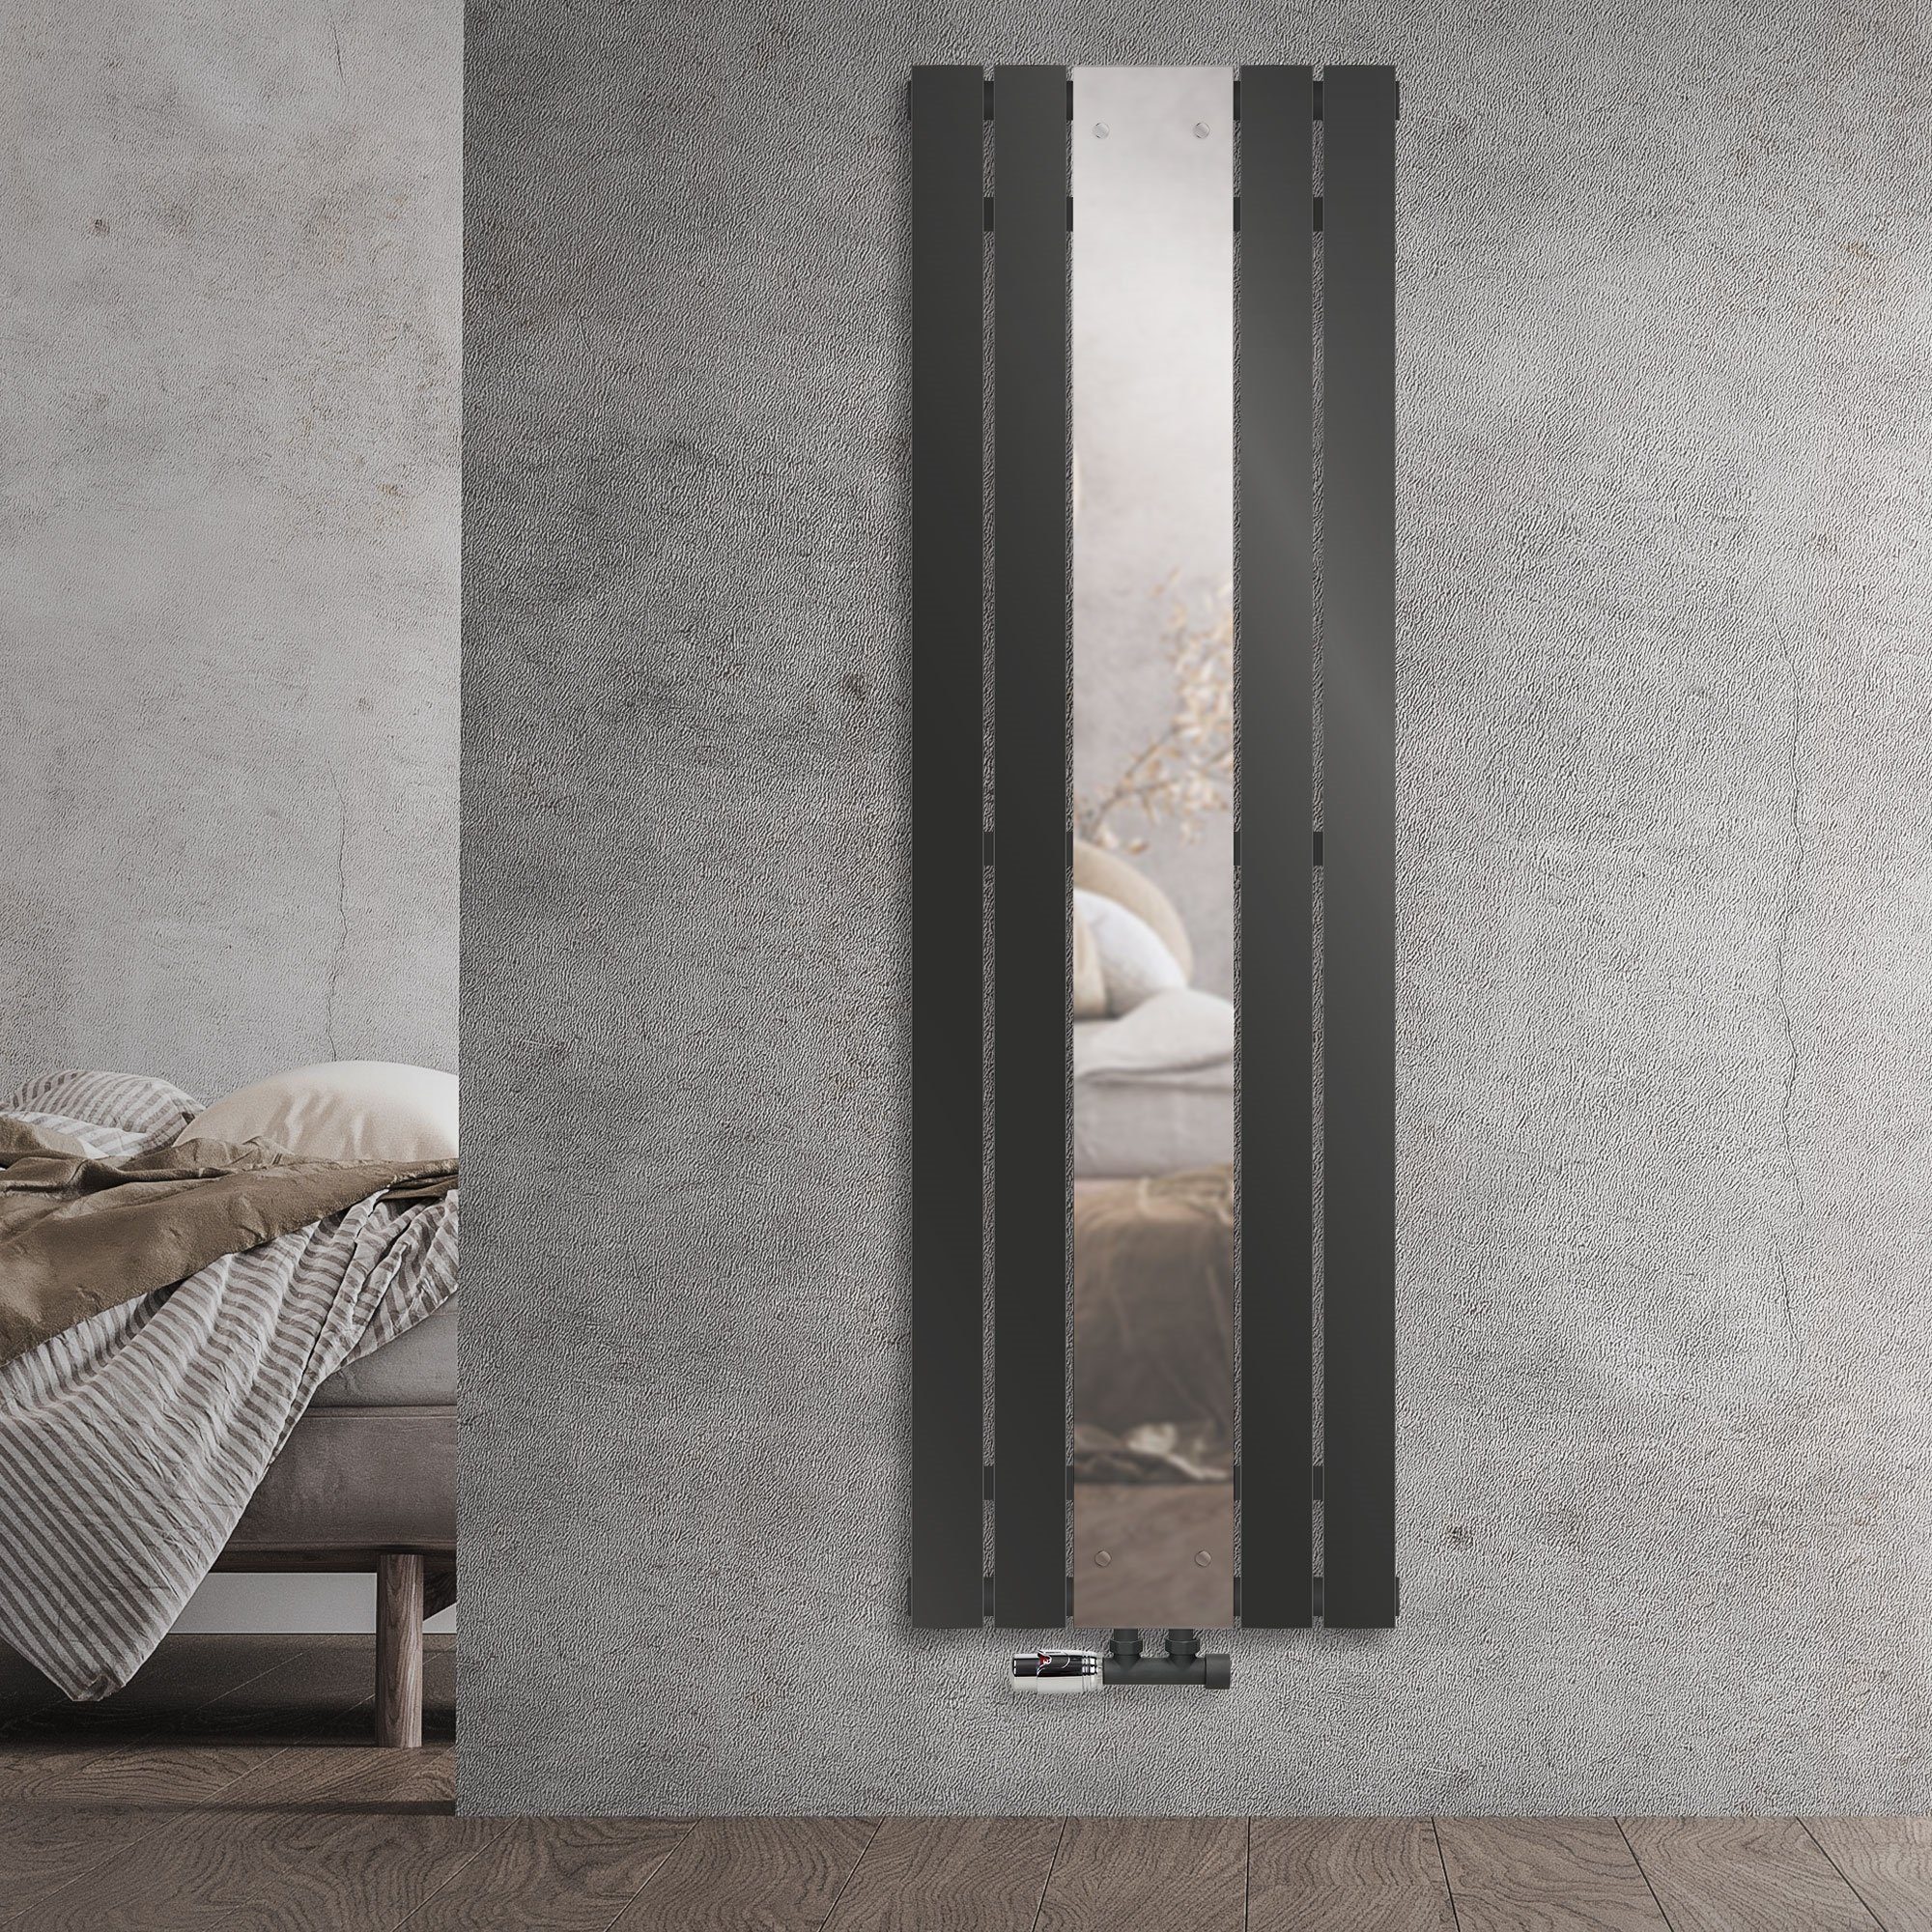 ML-DESIGN Heizkörper Badheizkörper Flach mit Spiegel und Wand  Anschlussgarnitur 45x160cm